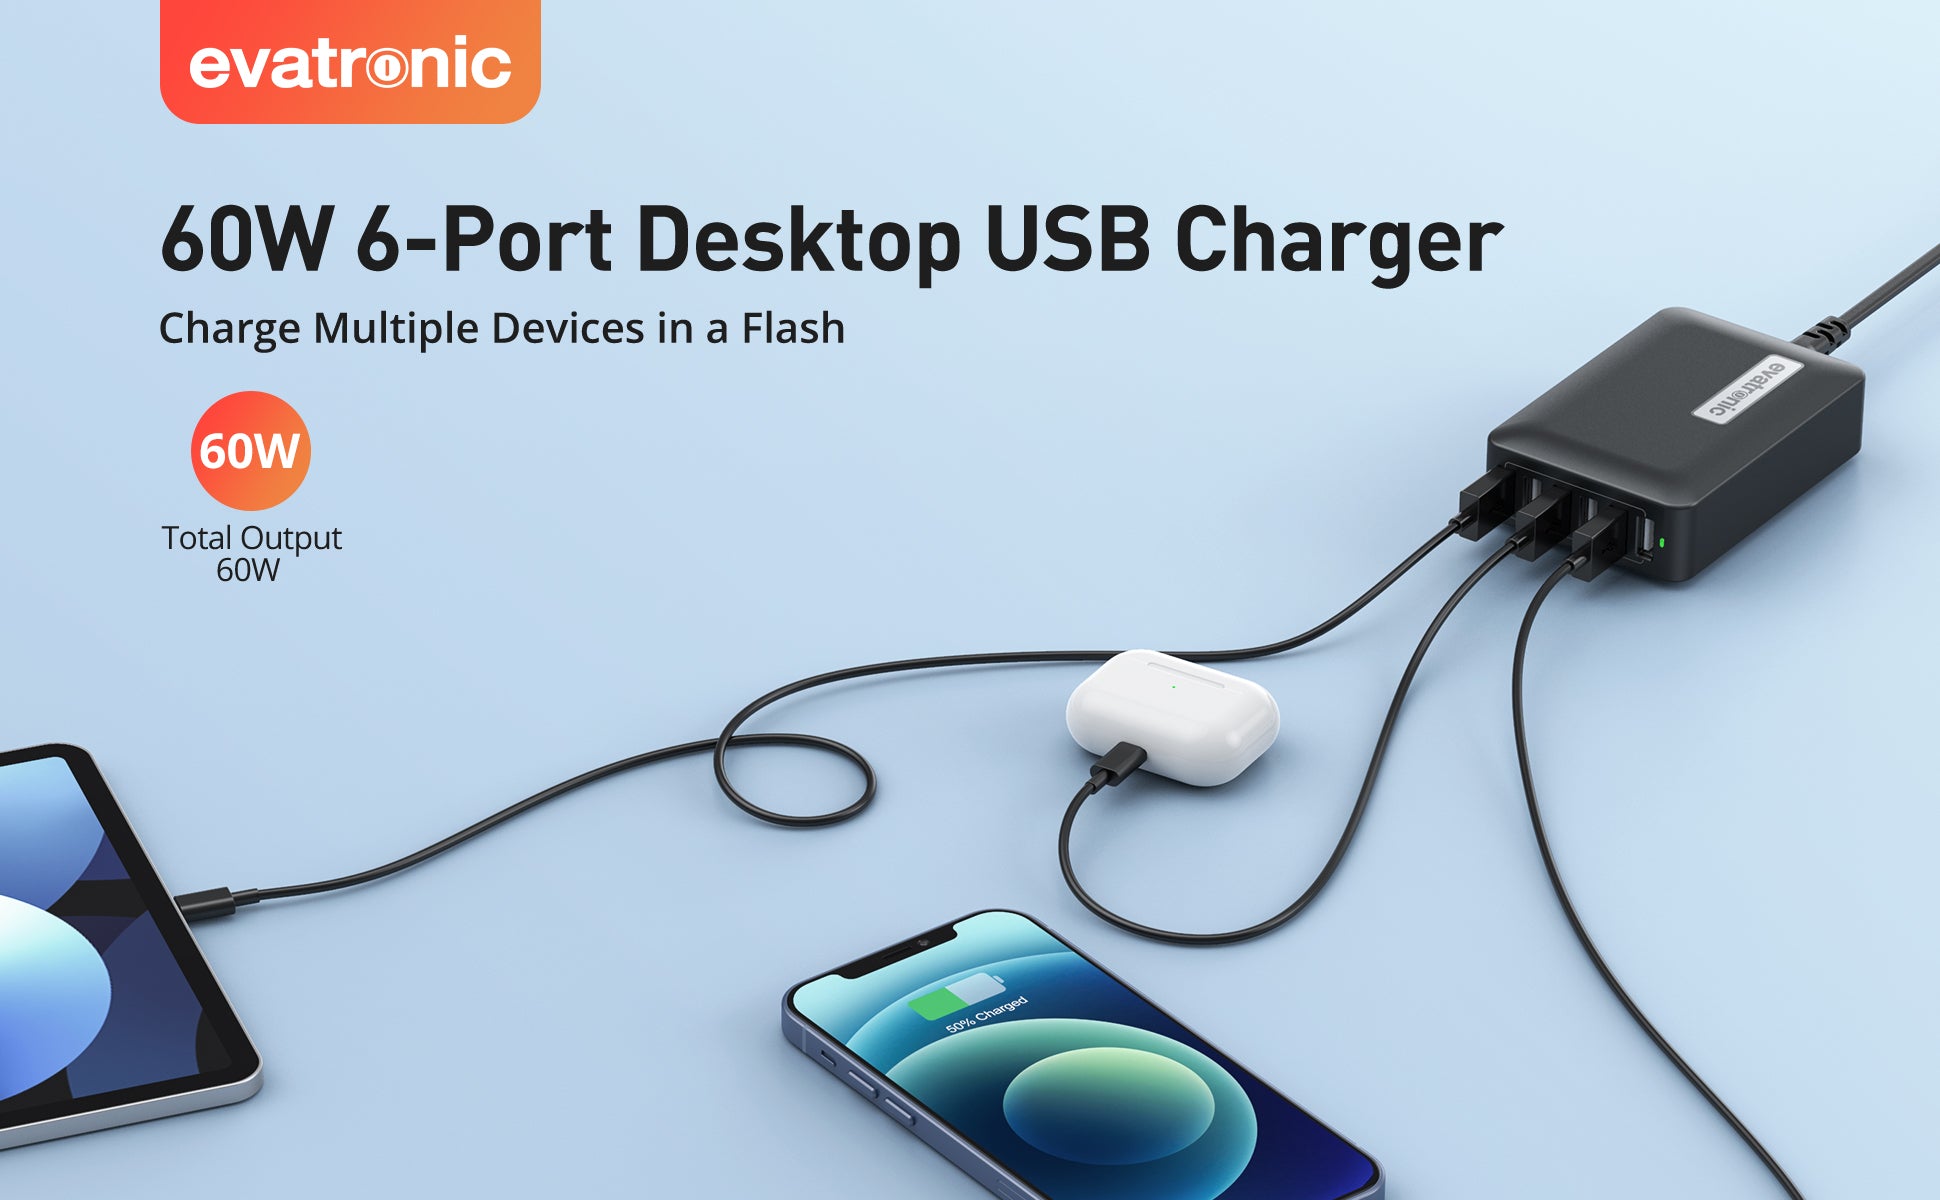  6-Port Desktop USB Charger